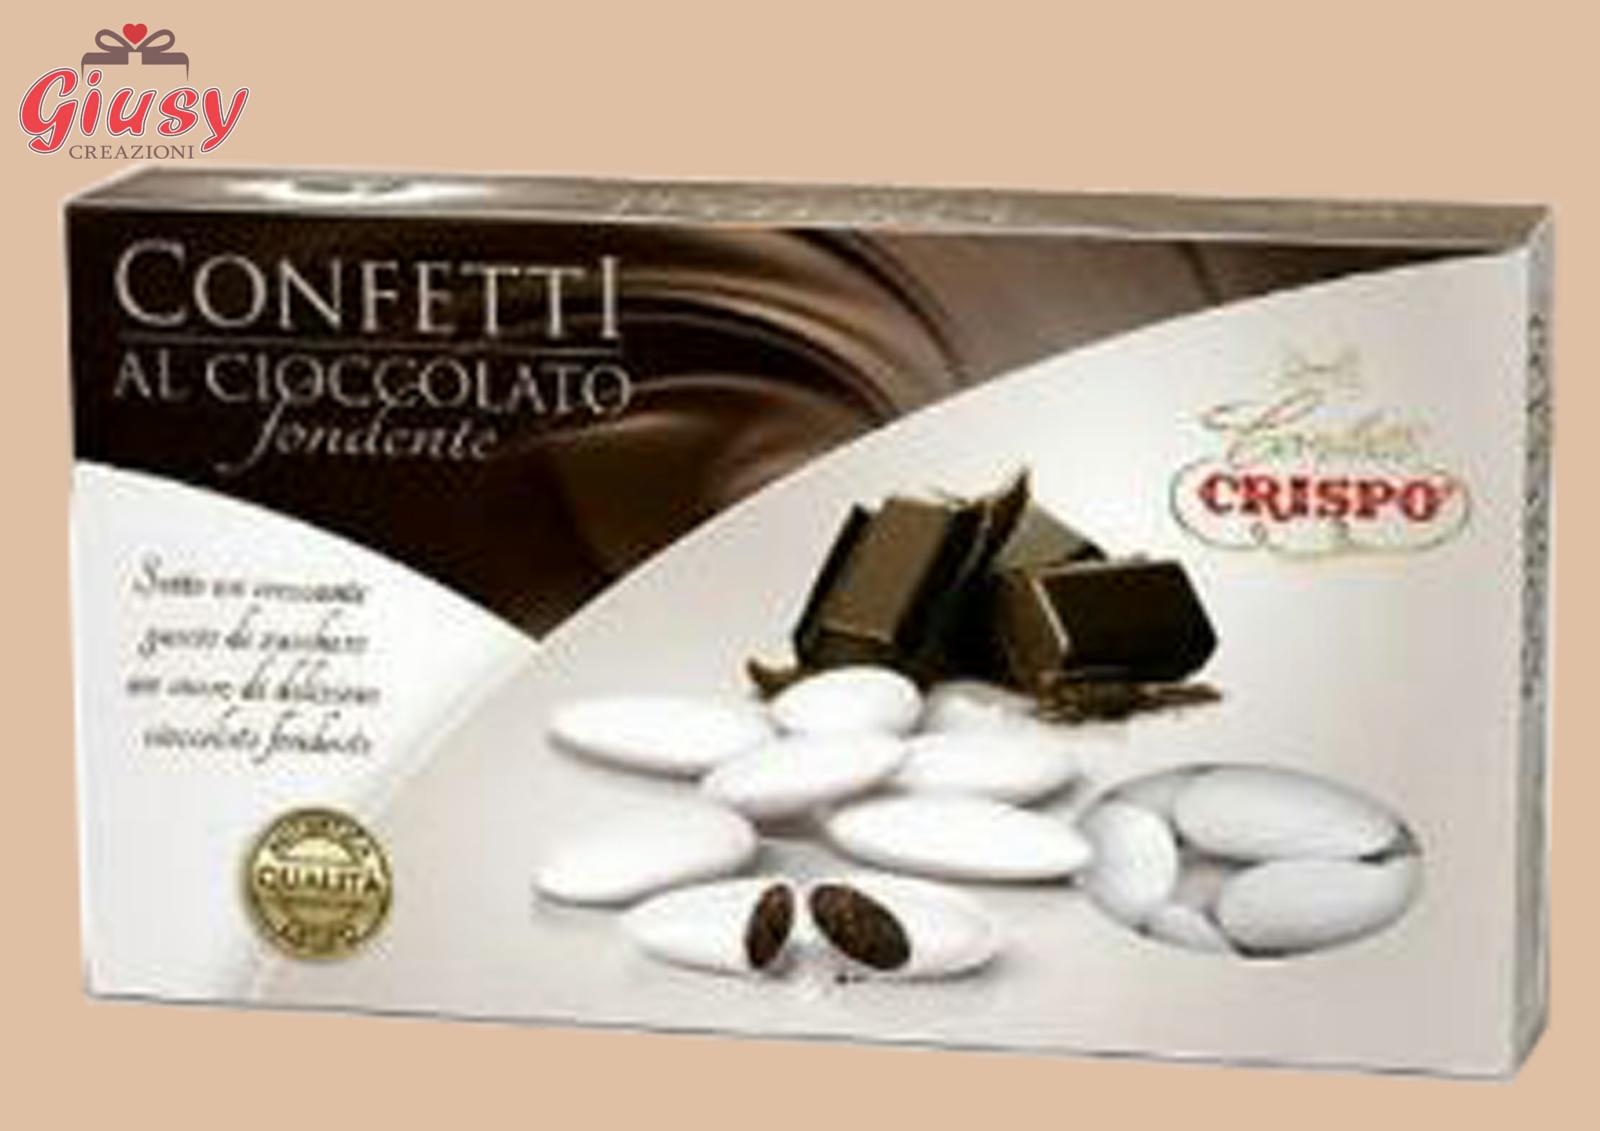 Confetti Al Cioccolato Fondente Confezione 1Kg Bianco